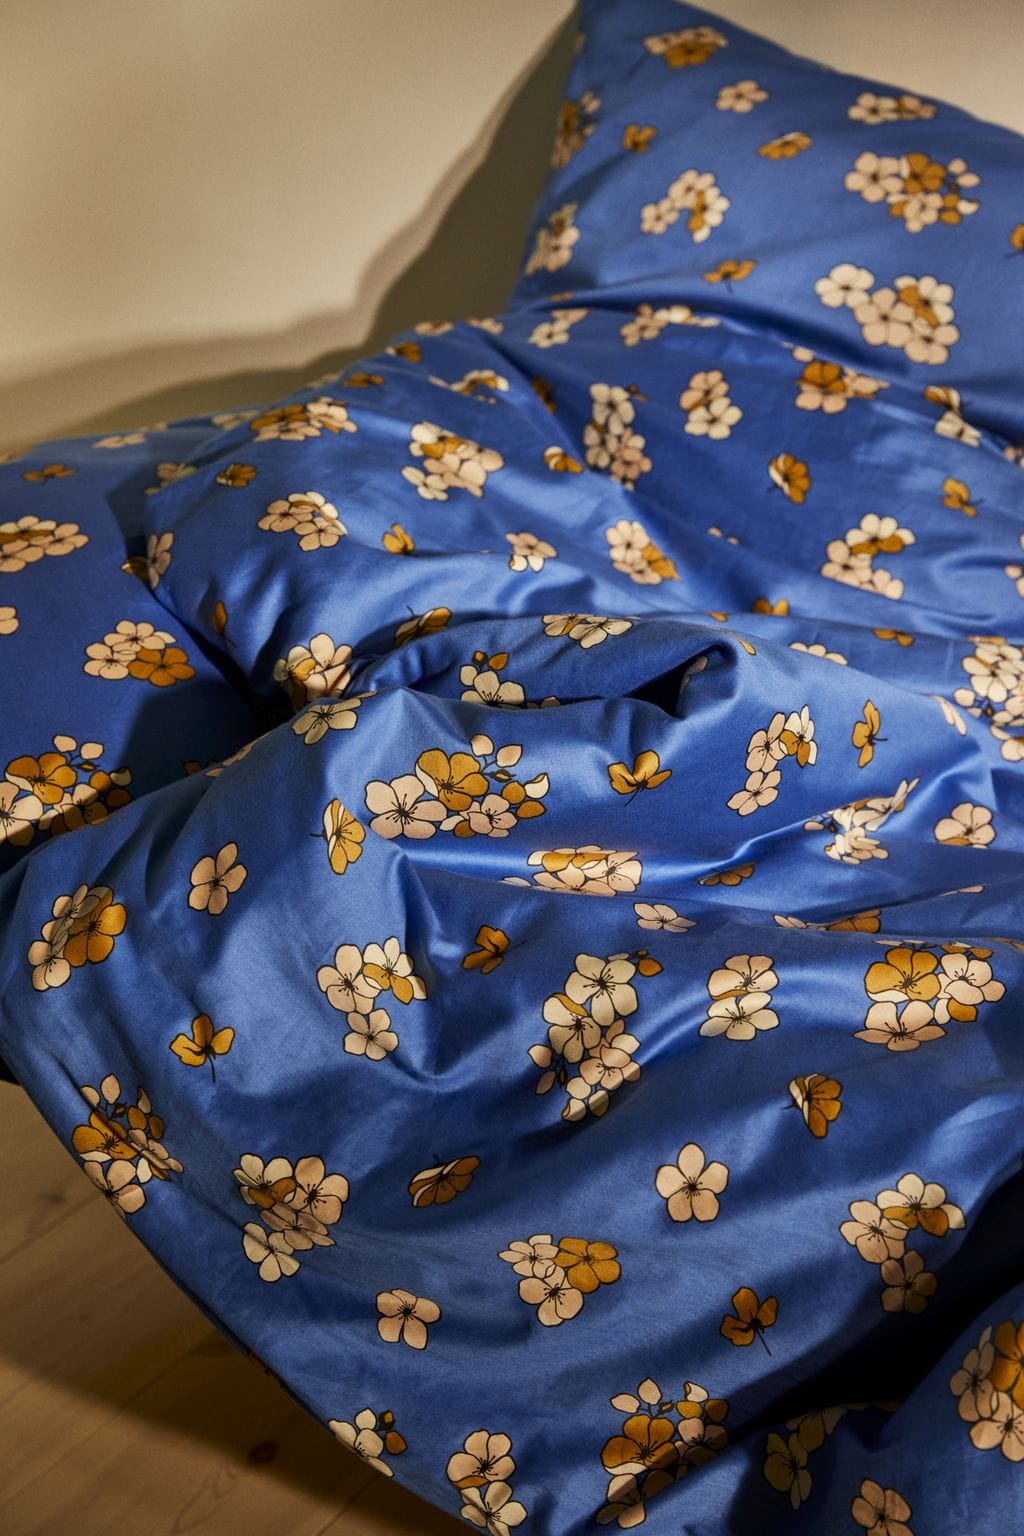 Juna grand behagelig seng lin 200 x220 cm, blå